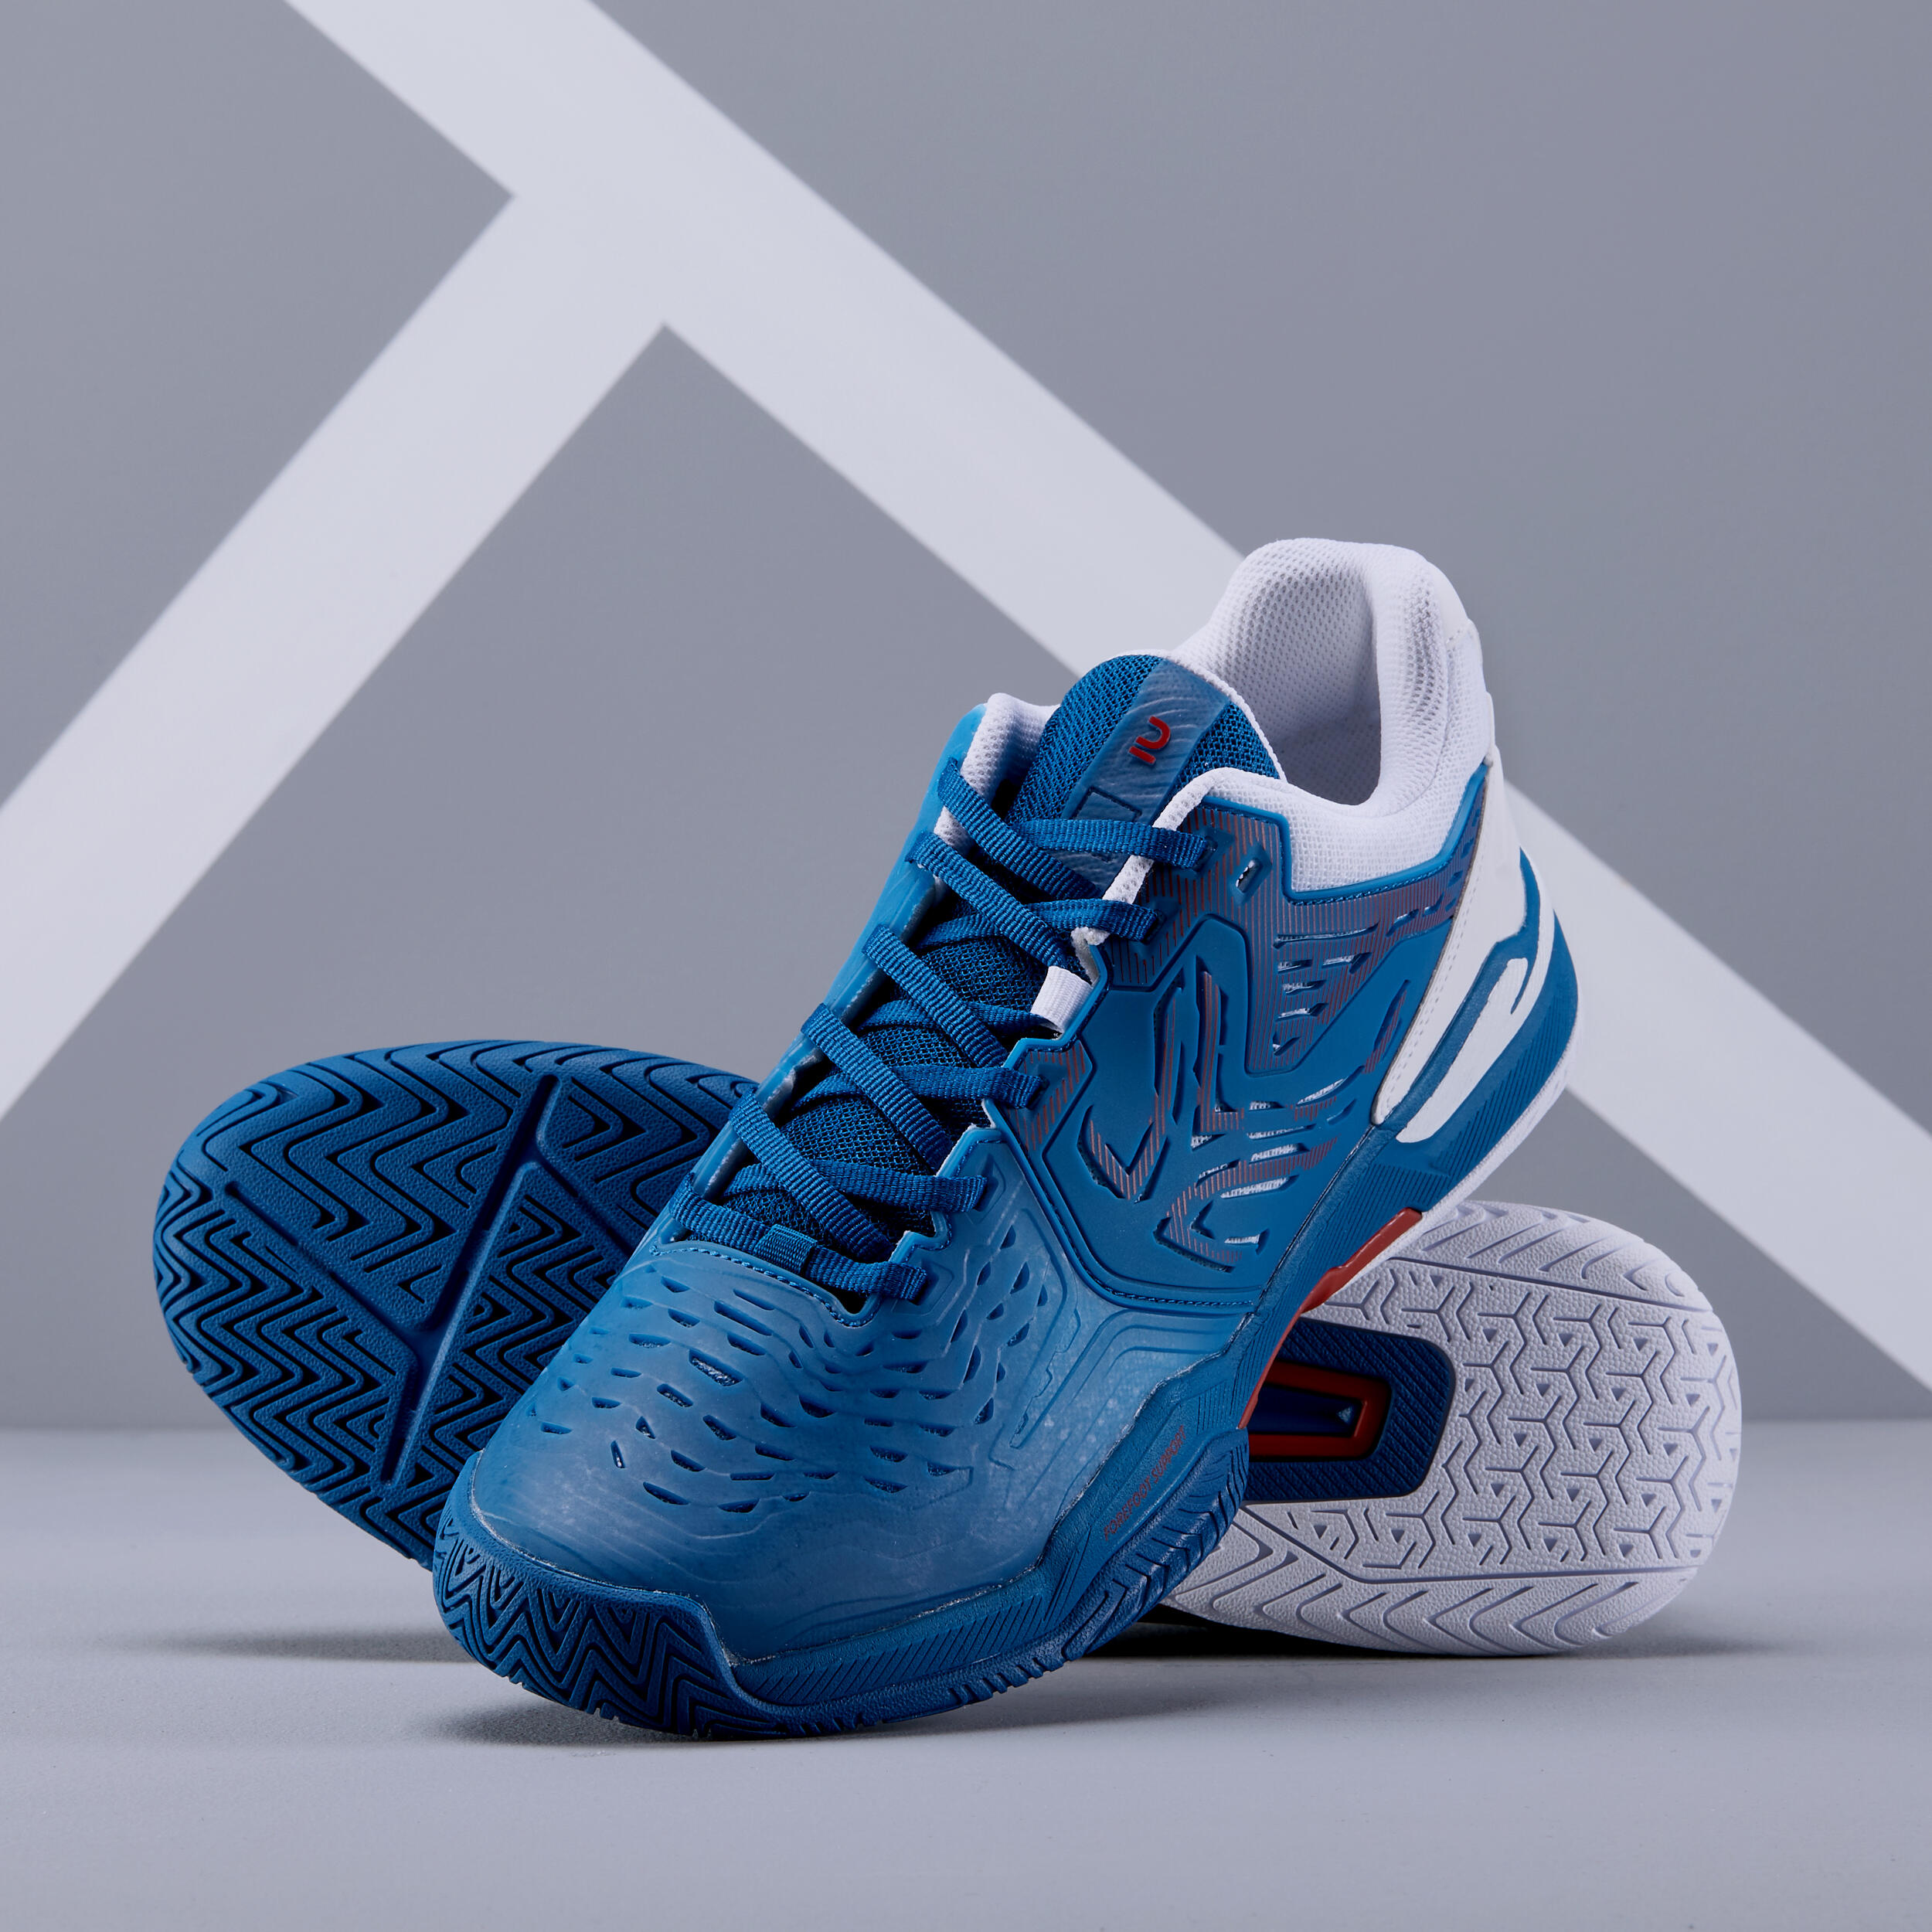 Men's Multicourt Tennis Shoes - TS 560 Blue - ARTENGO